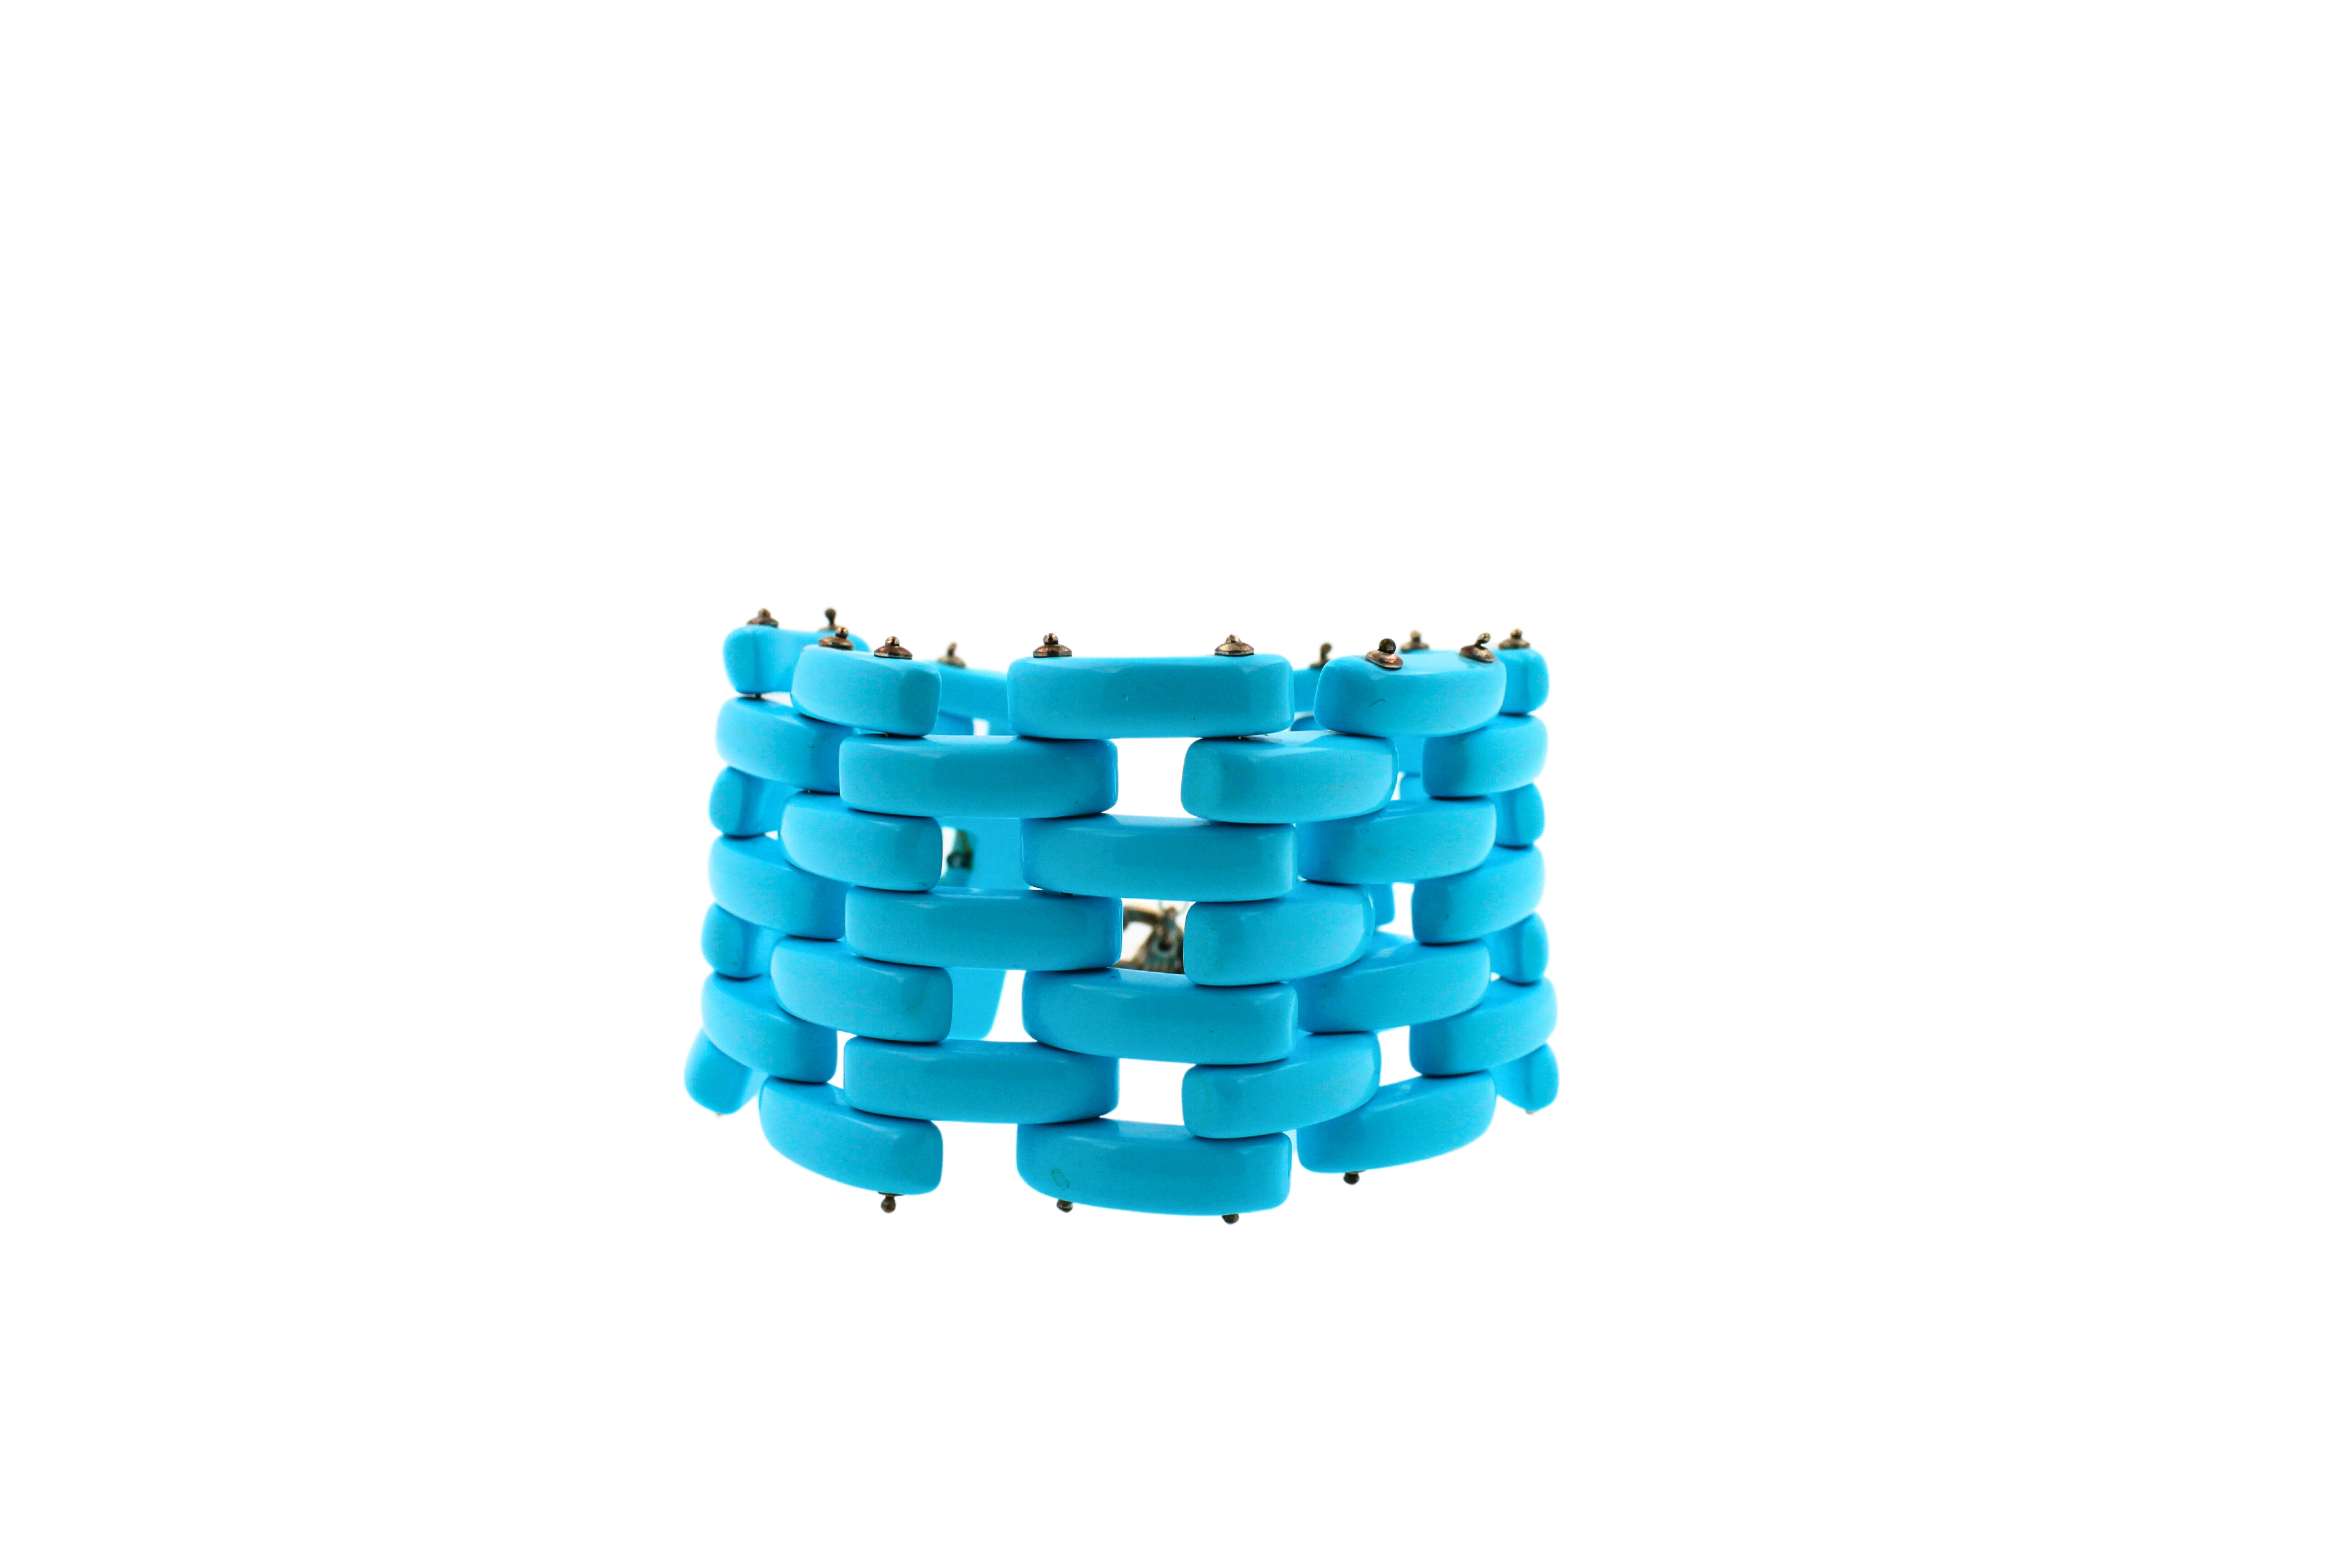 Teal Blau Türkis Fancy Cabochon längliches, breites, einzigartiges Statement-Armband
Länge des Armbands - 8 Zoll
Breite: 40 mm
Silberne Spange
Hergestellt in Italien